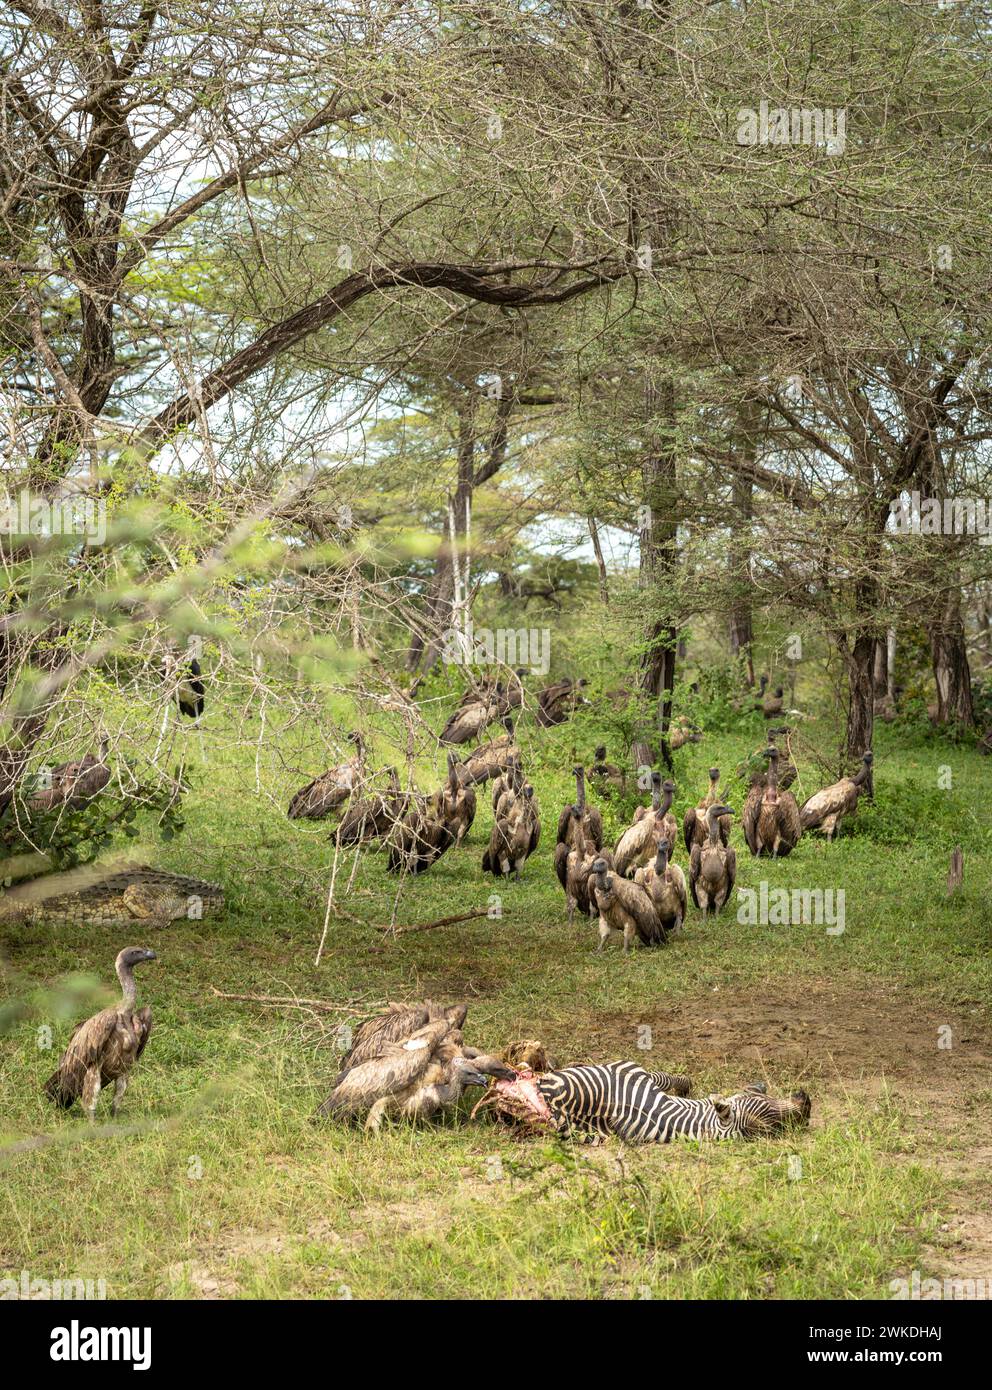 Gli avvoltoi bianchi si spostano verso una zebra morta per mangiare la carcassa nel Parco Nazionale di Nyerere (Selous Game Reserve) nel sud della Tanzania. Foto Stock